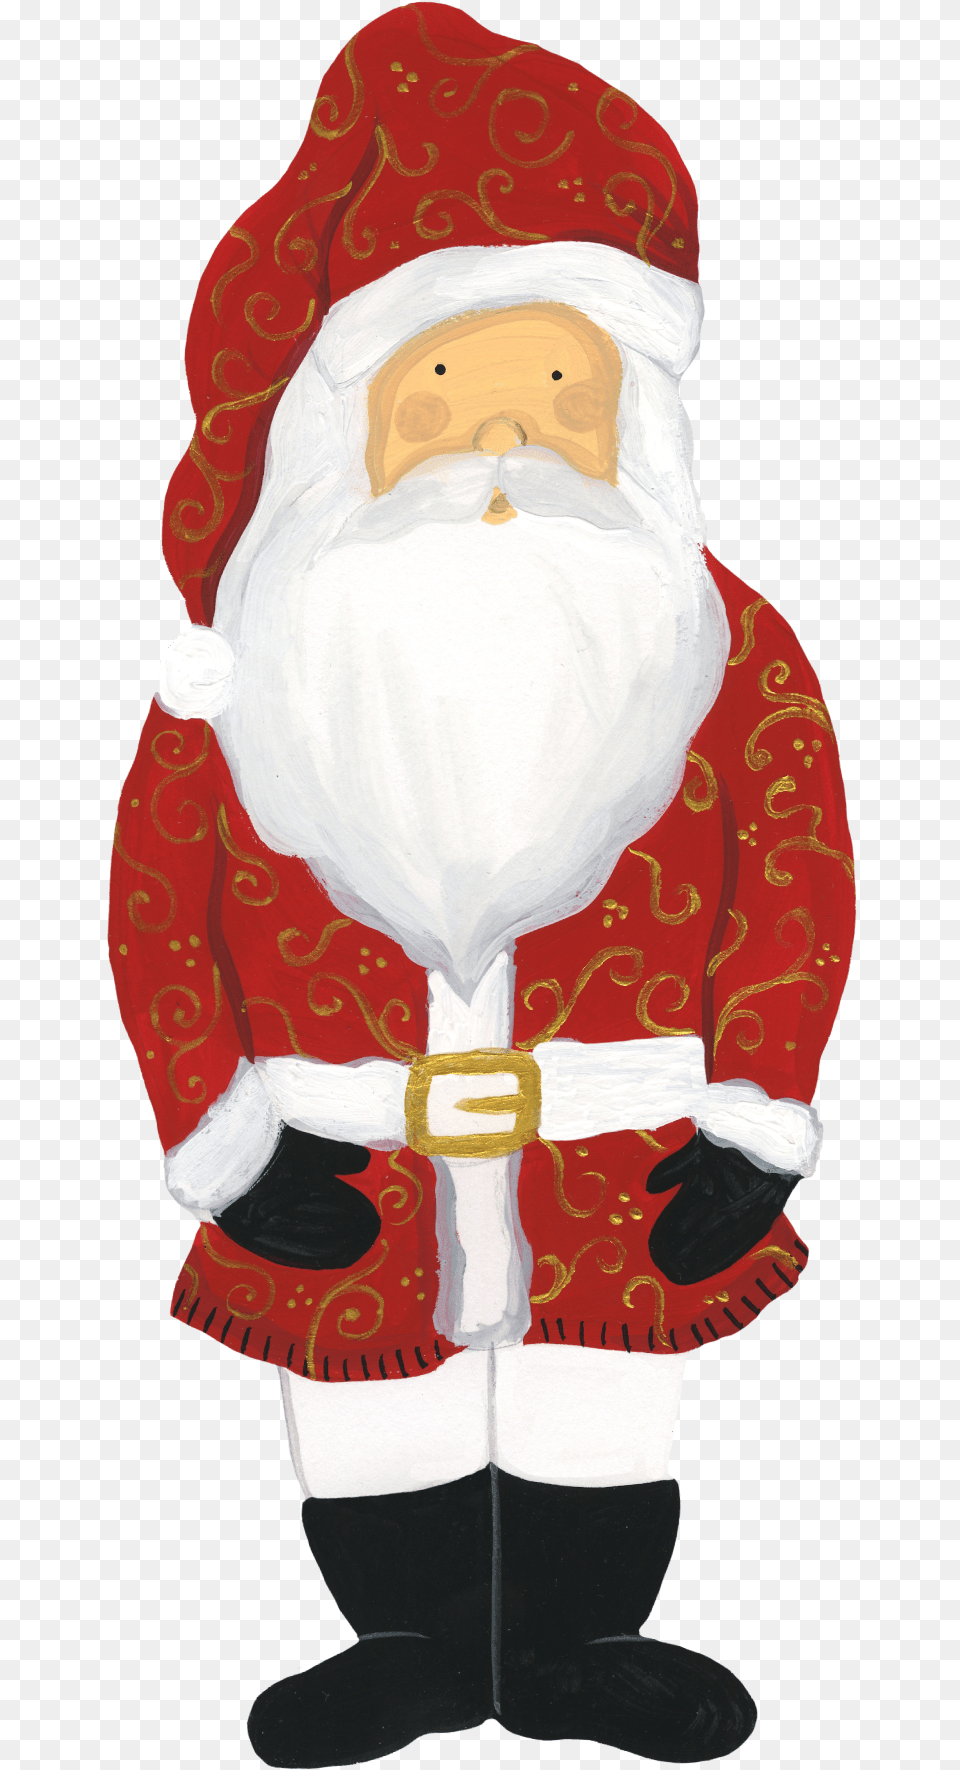 Santa Print Amp Cut File Santa Claus, Clothing, Coat, Baby, Person Png Image